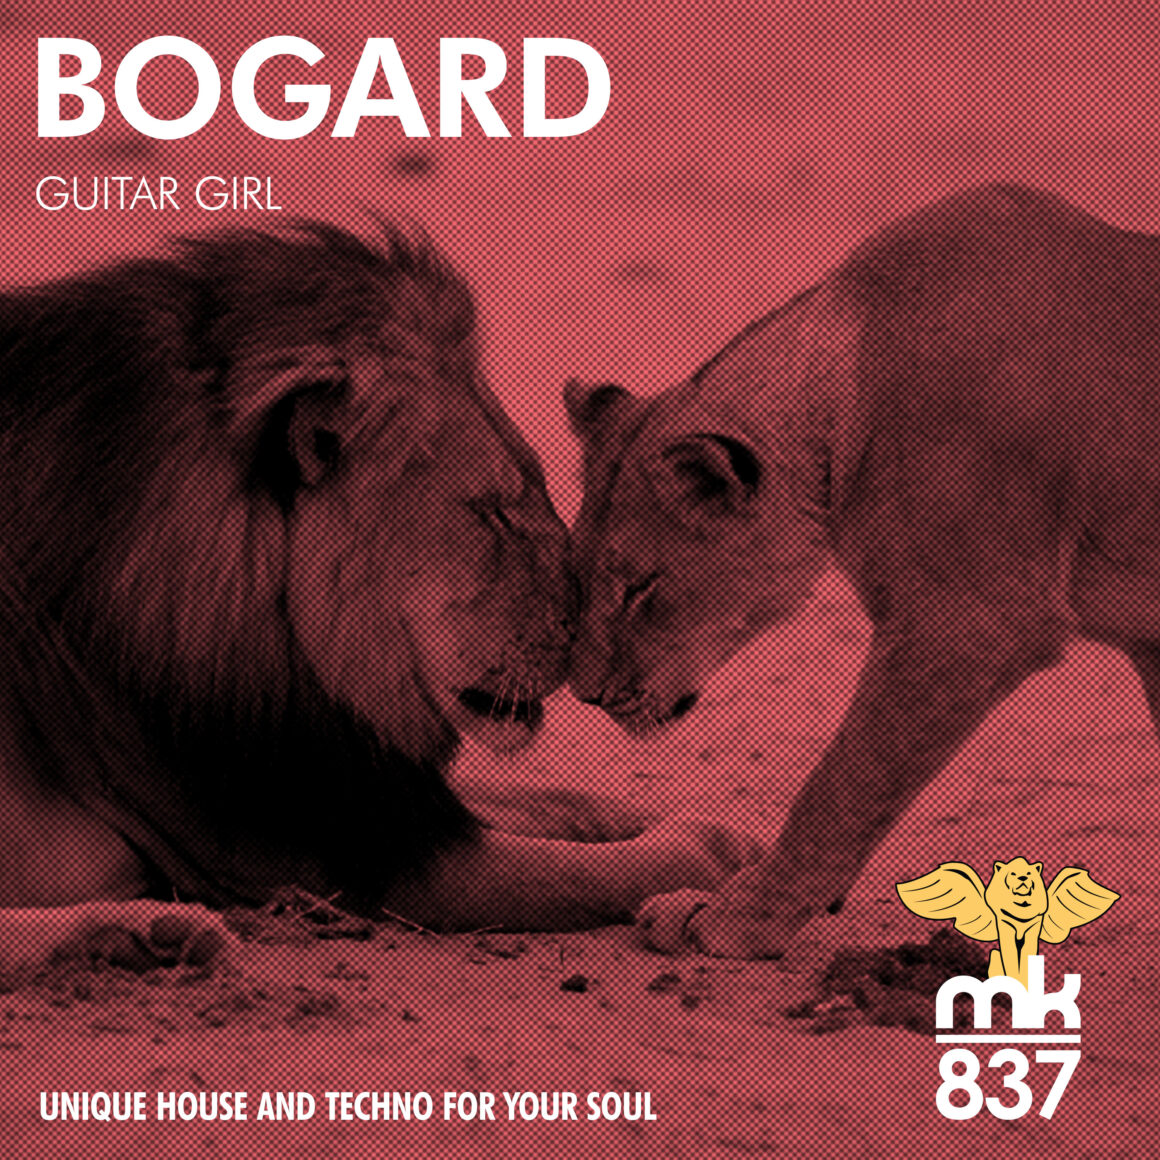 Bogard - Guitar Girl